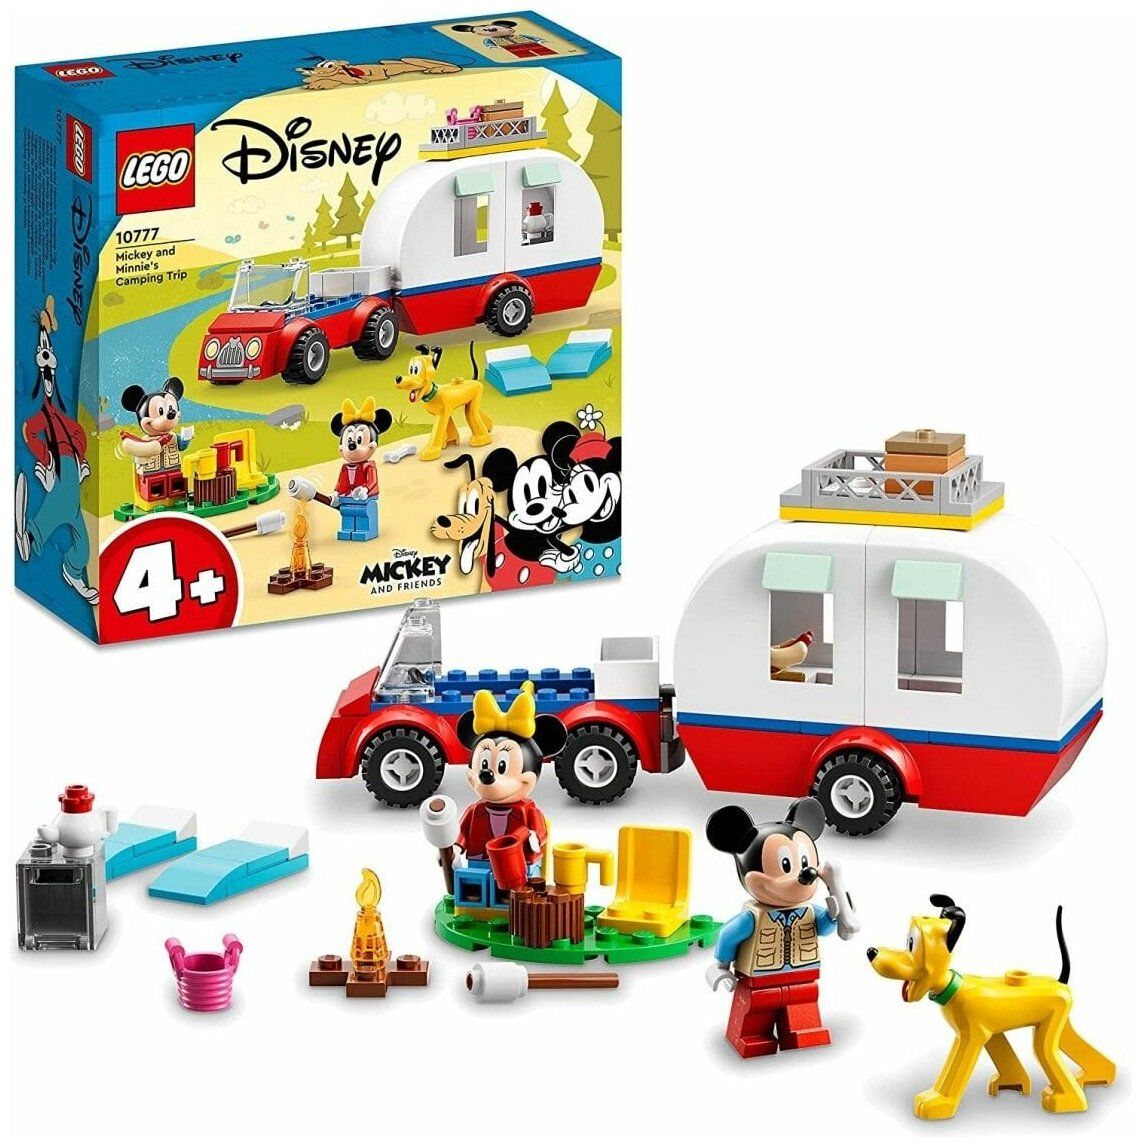 Конструктор LEGO 10777 Disney Mickey Mouse and Minnie Mouses Camping(Поход Микки Мауса и Минни) - фото 1